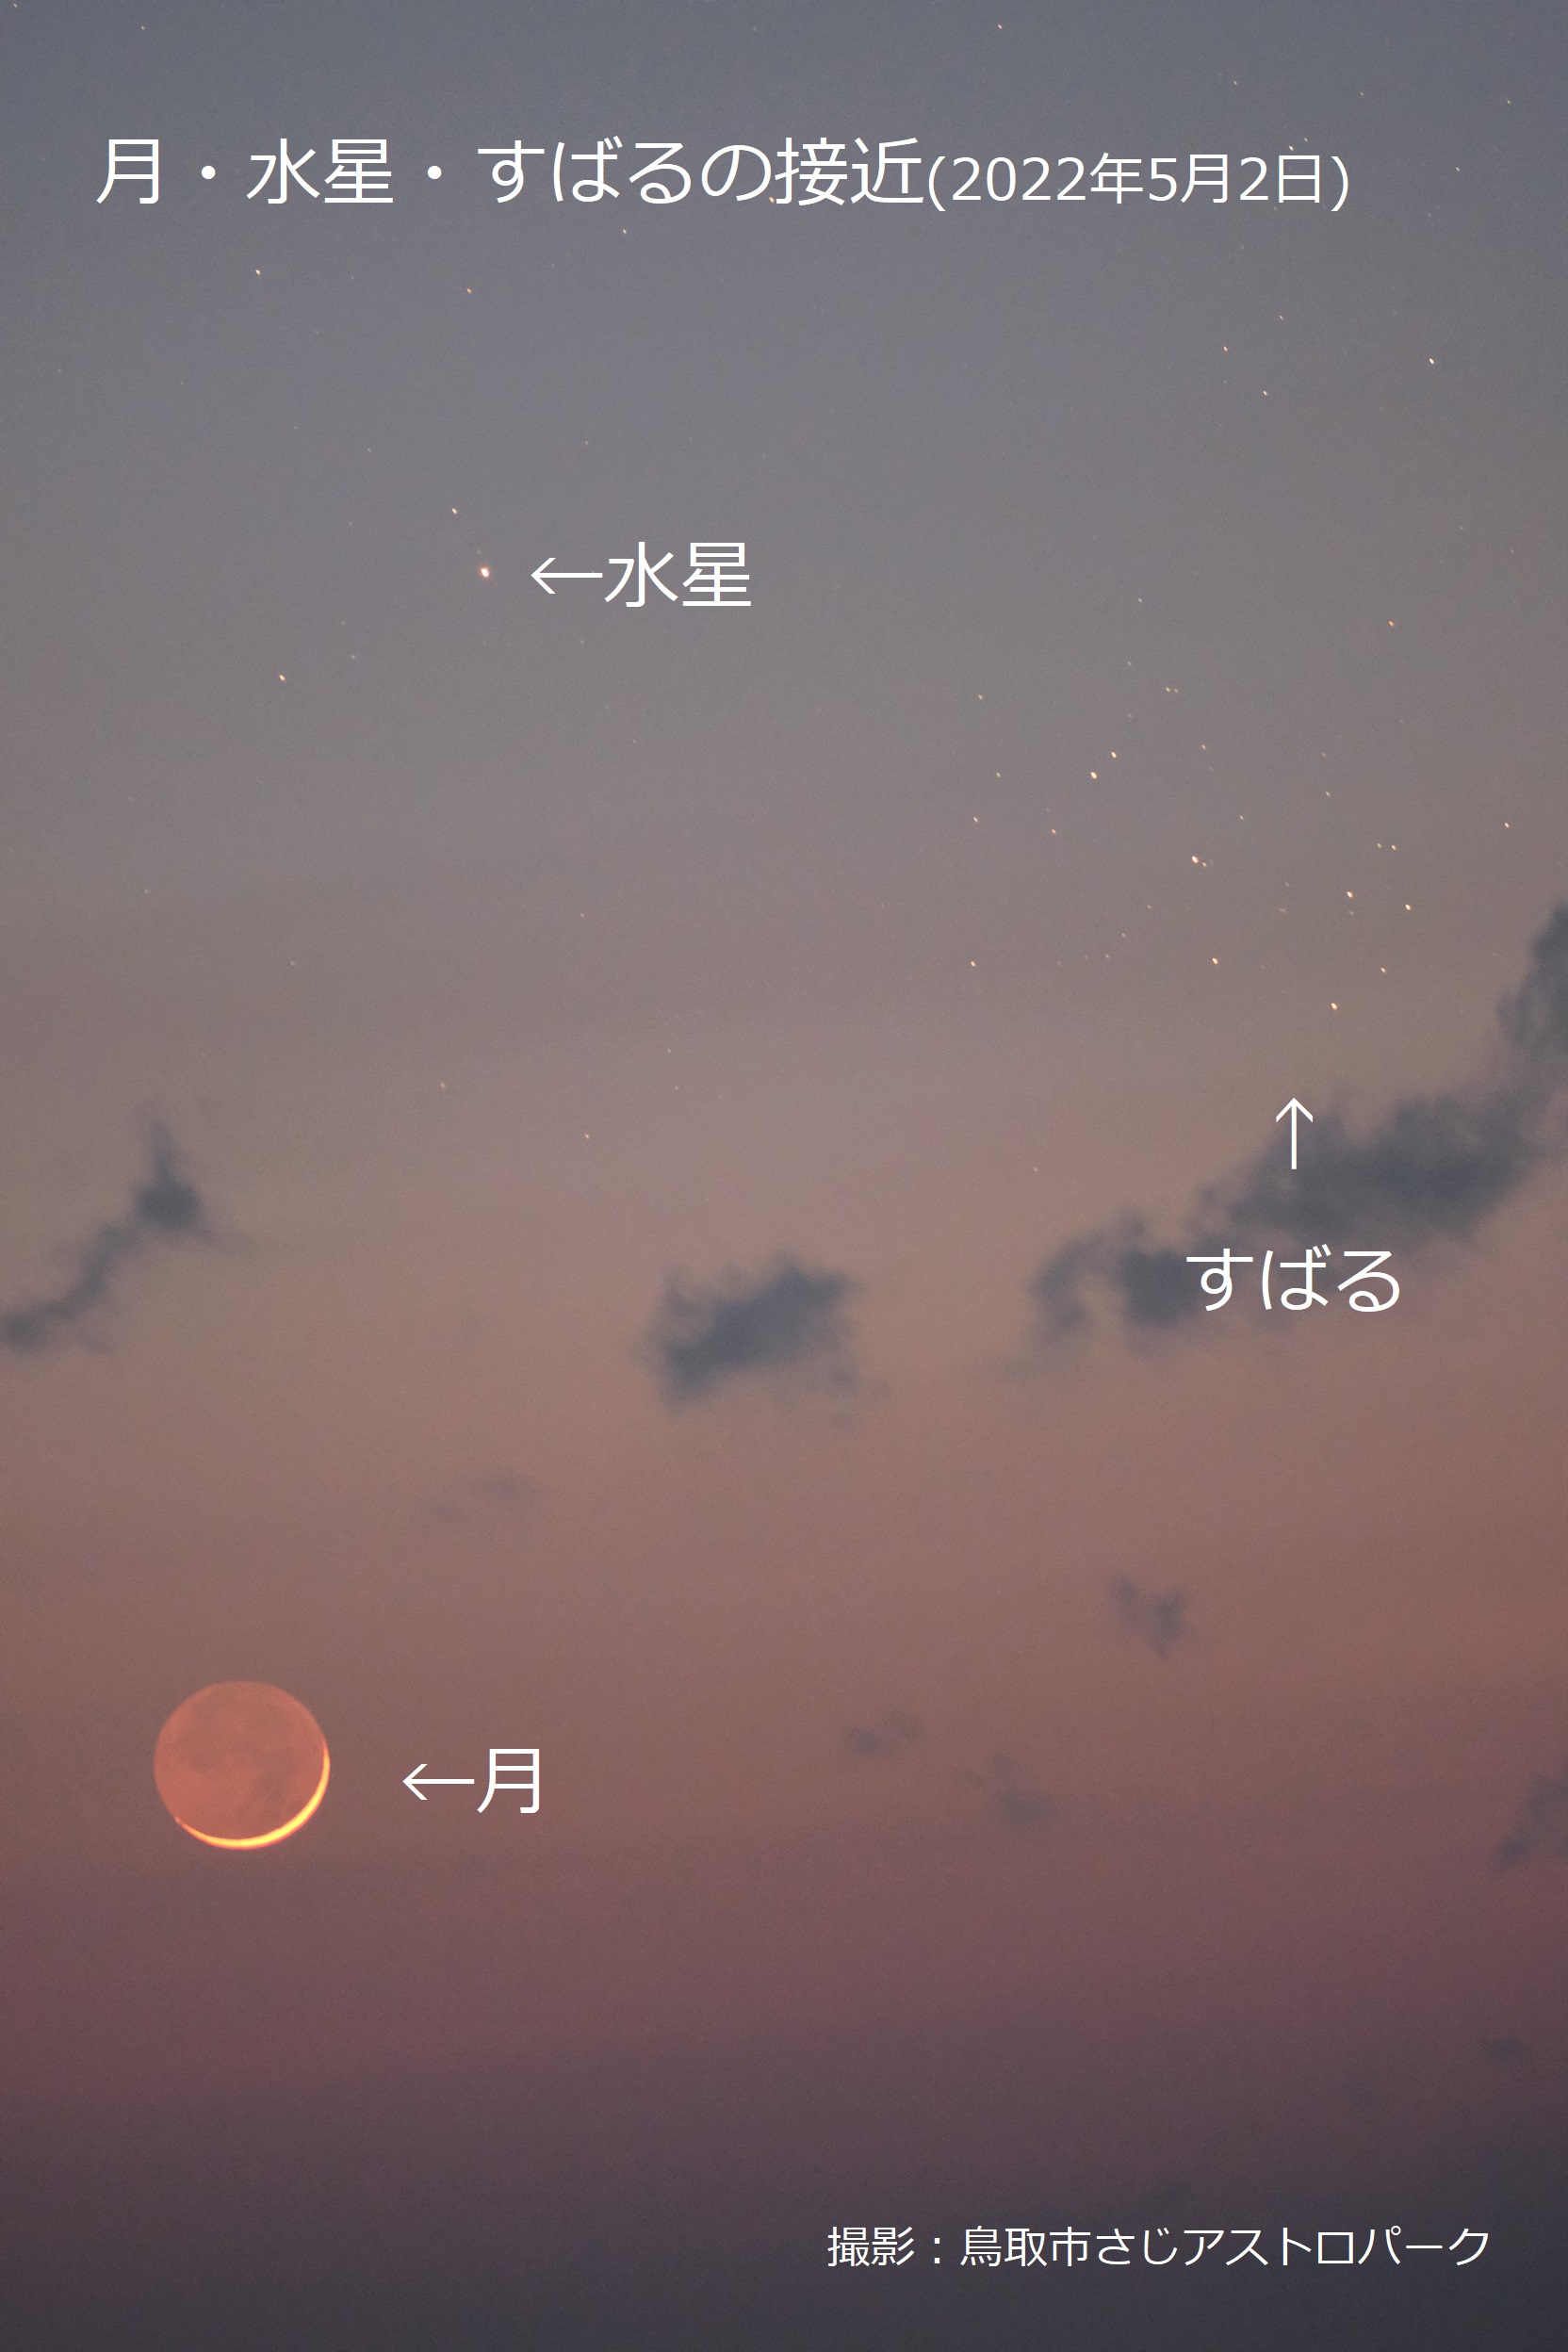 夕方に並ぶ月と水星とすばる 22年５月２日 鳥取市